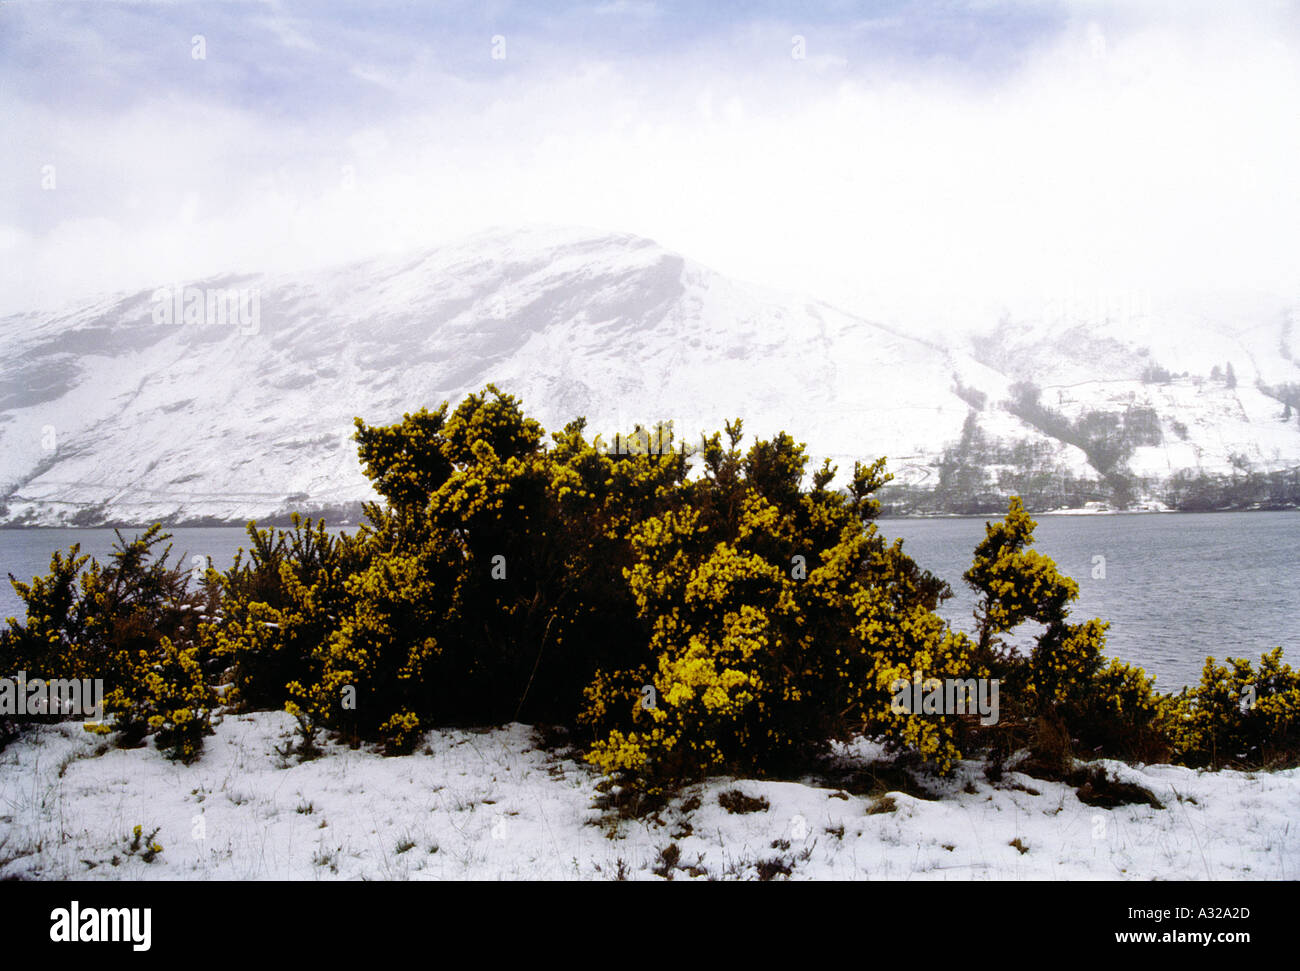 AMA PL51 Frühlingsschnee auf Ginster Schottland Großbritannien Vereinigtes Königreich Stockfoto